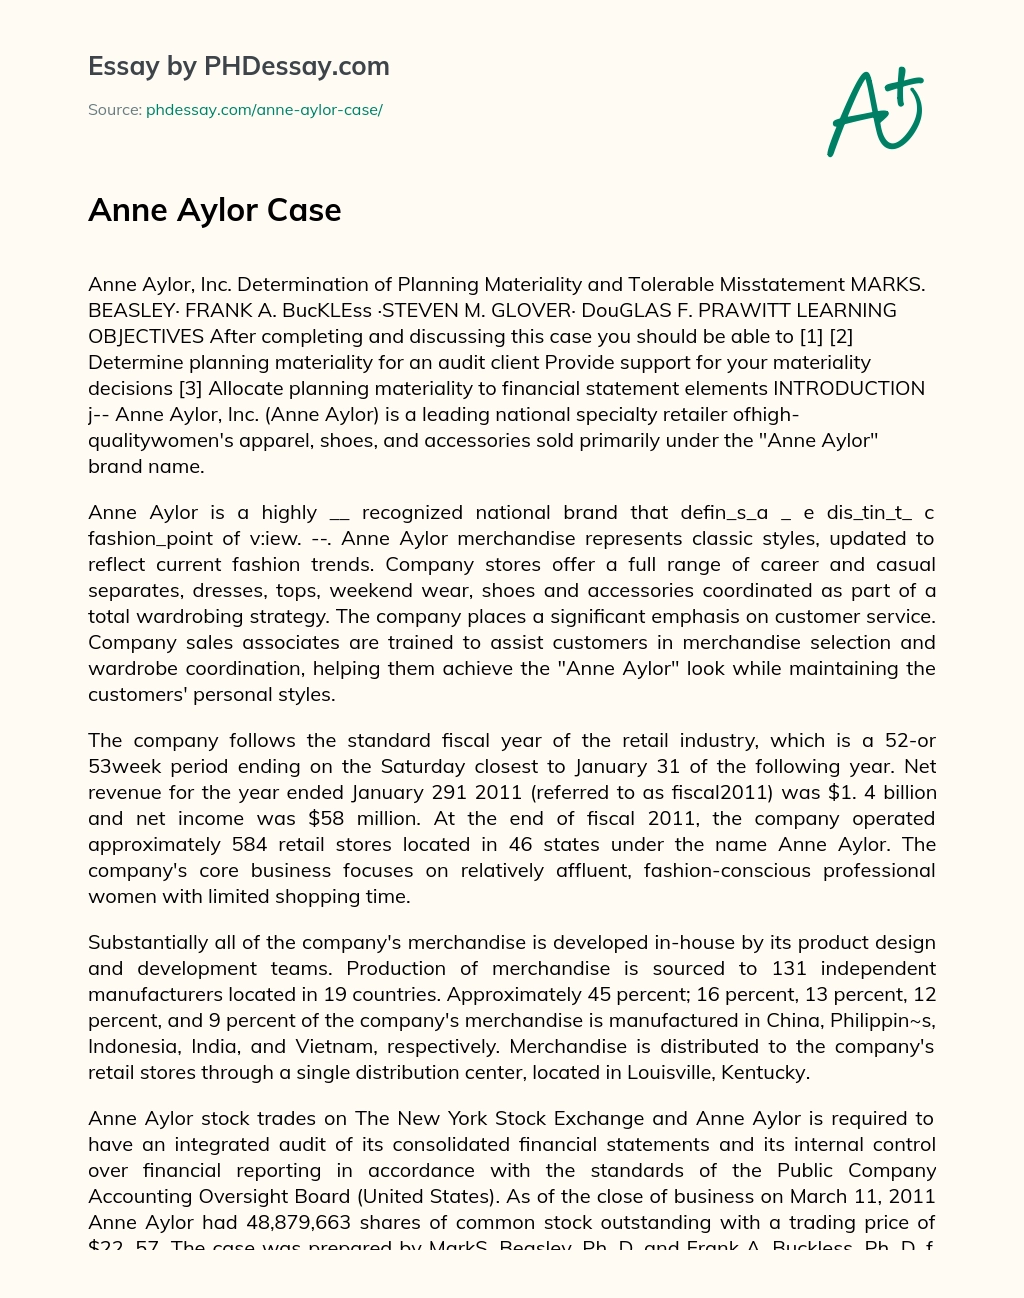 Anne Aylor Case essay